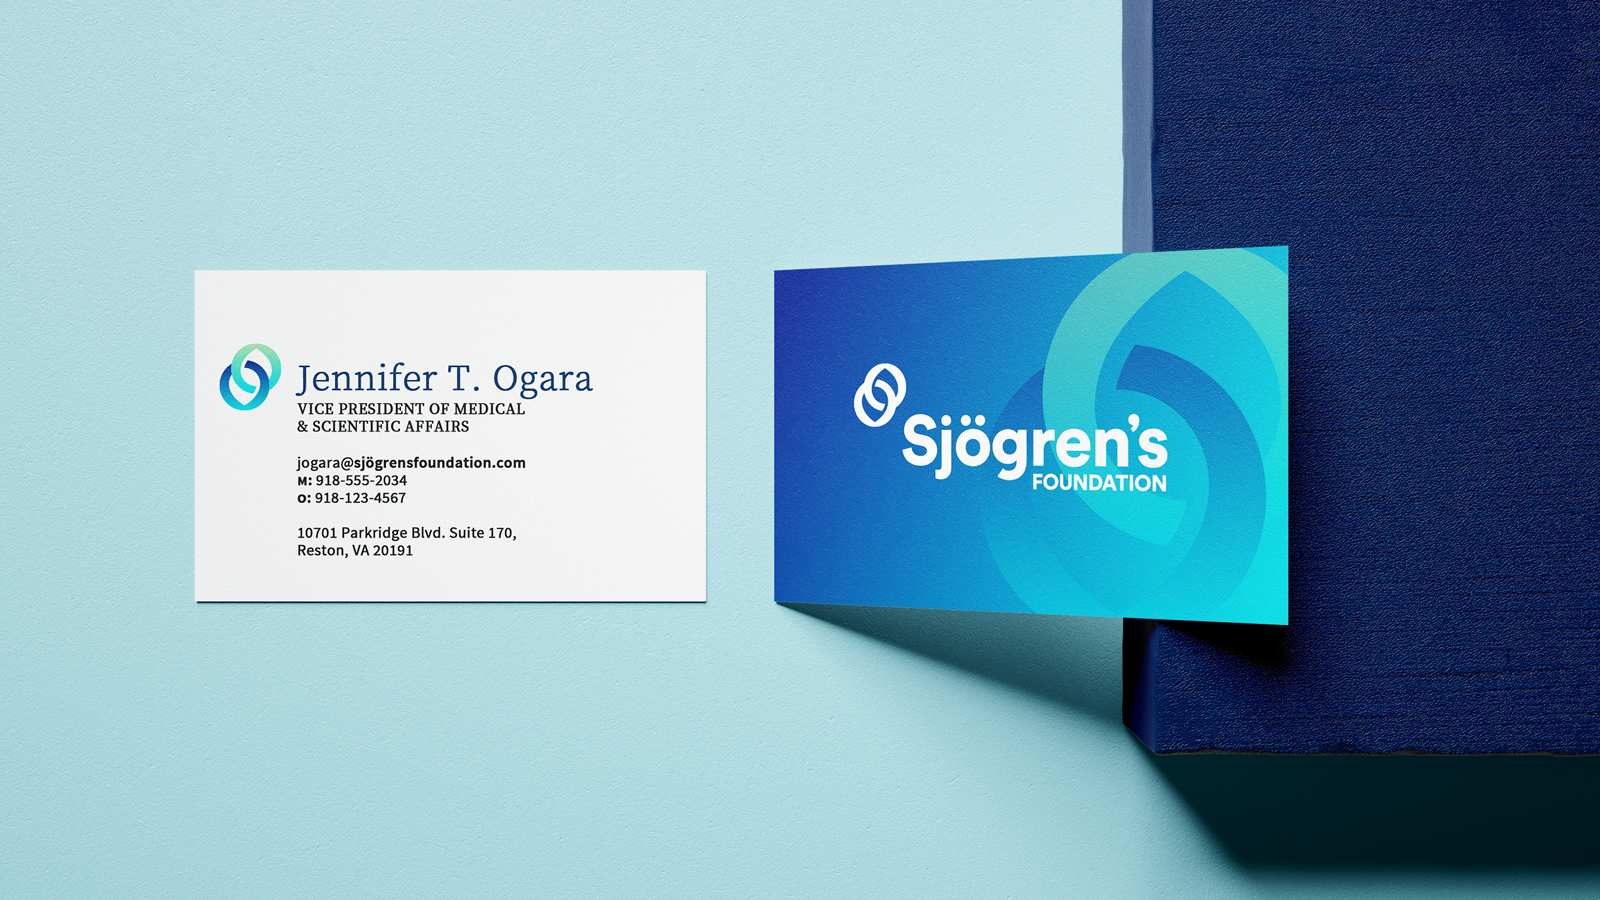 Sjögren's Foundation business card mockup